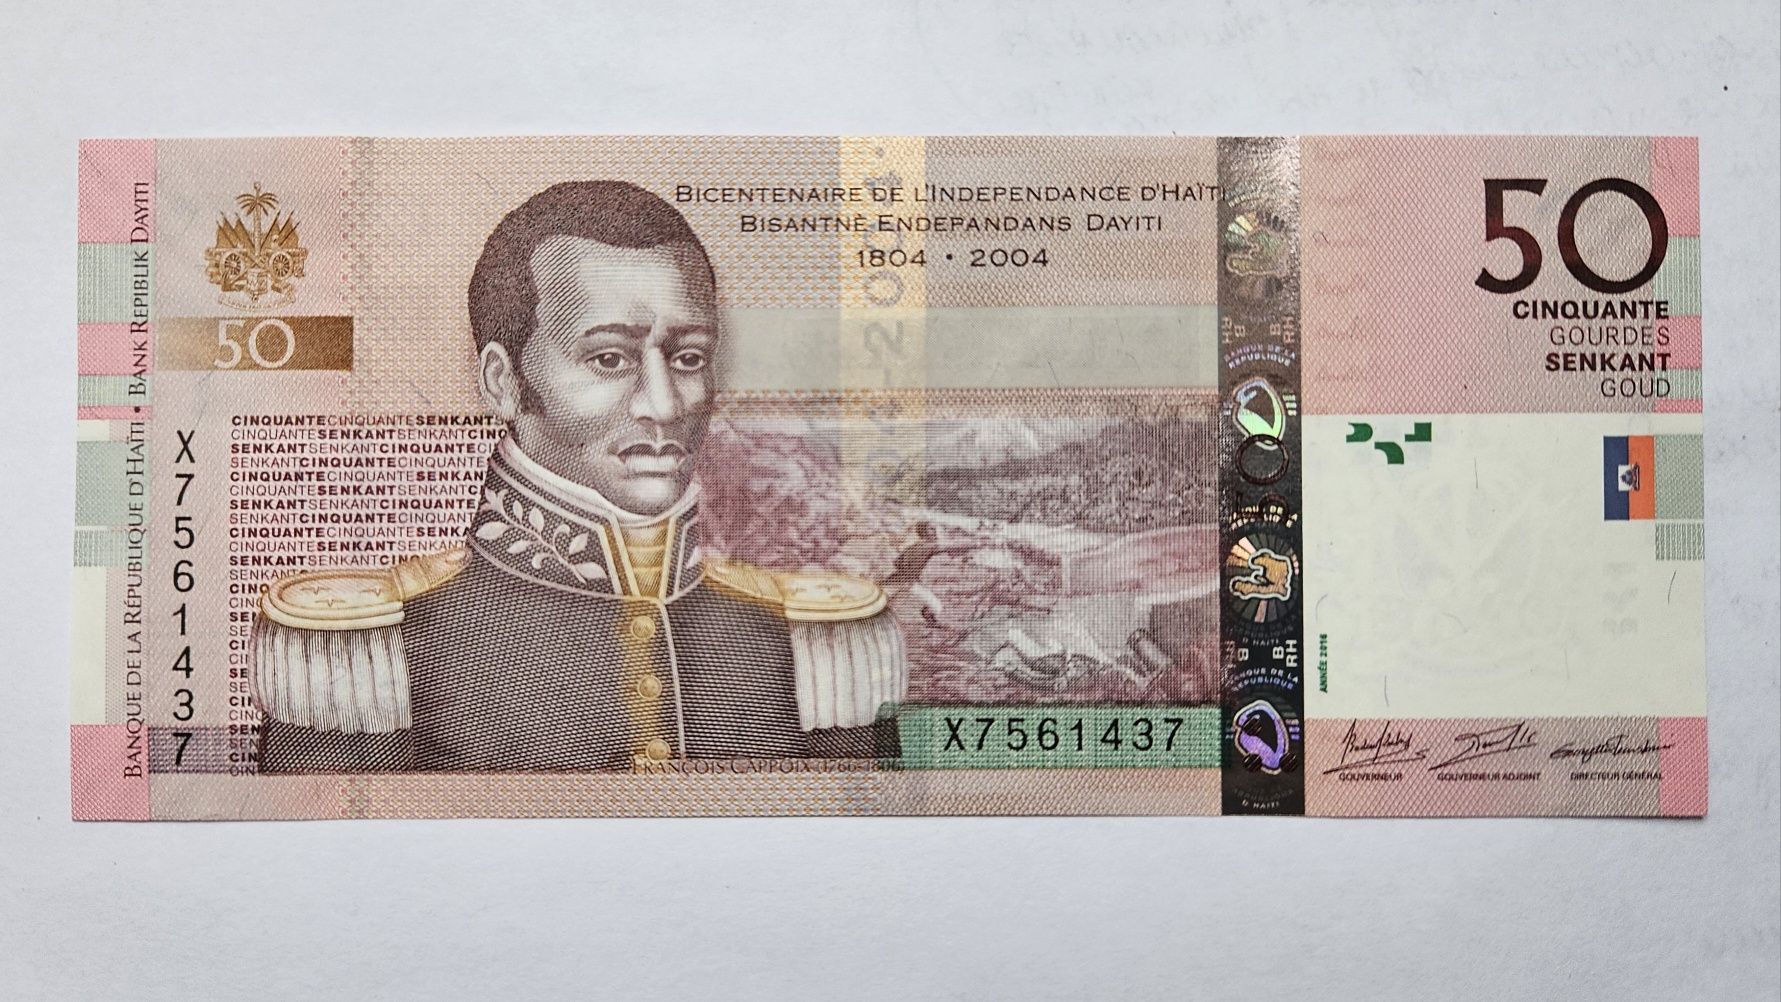 Гаїті банкнота 50 гурдів UNC 2016 | Гаити 50 гурдов